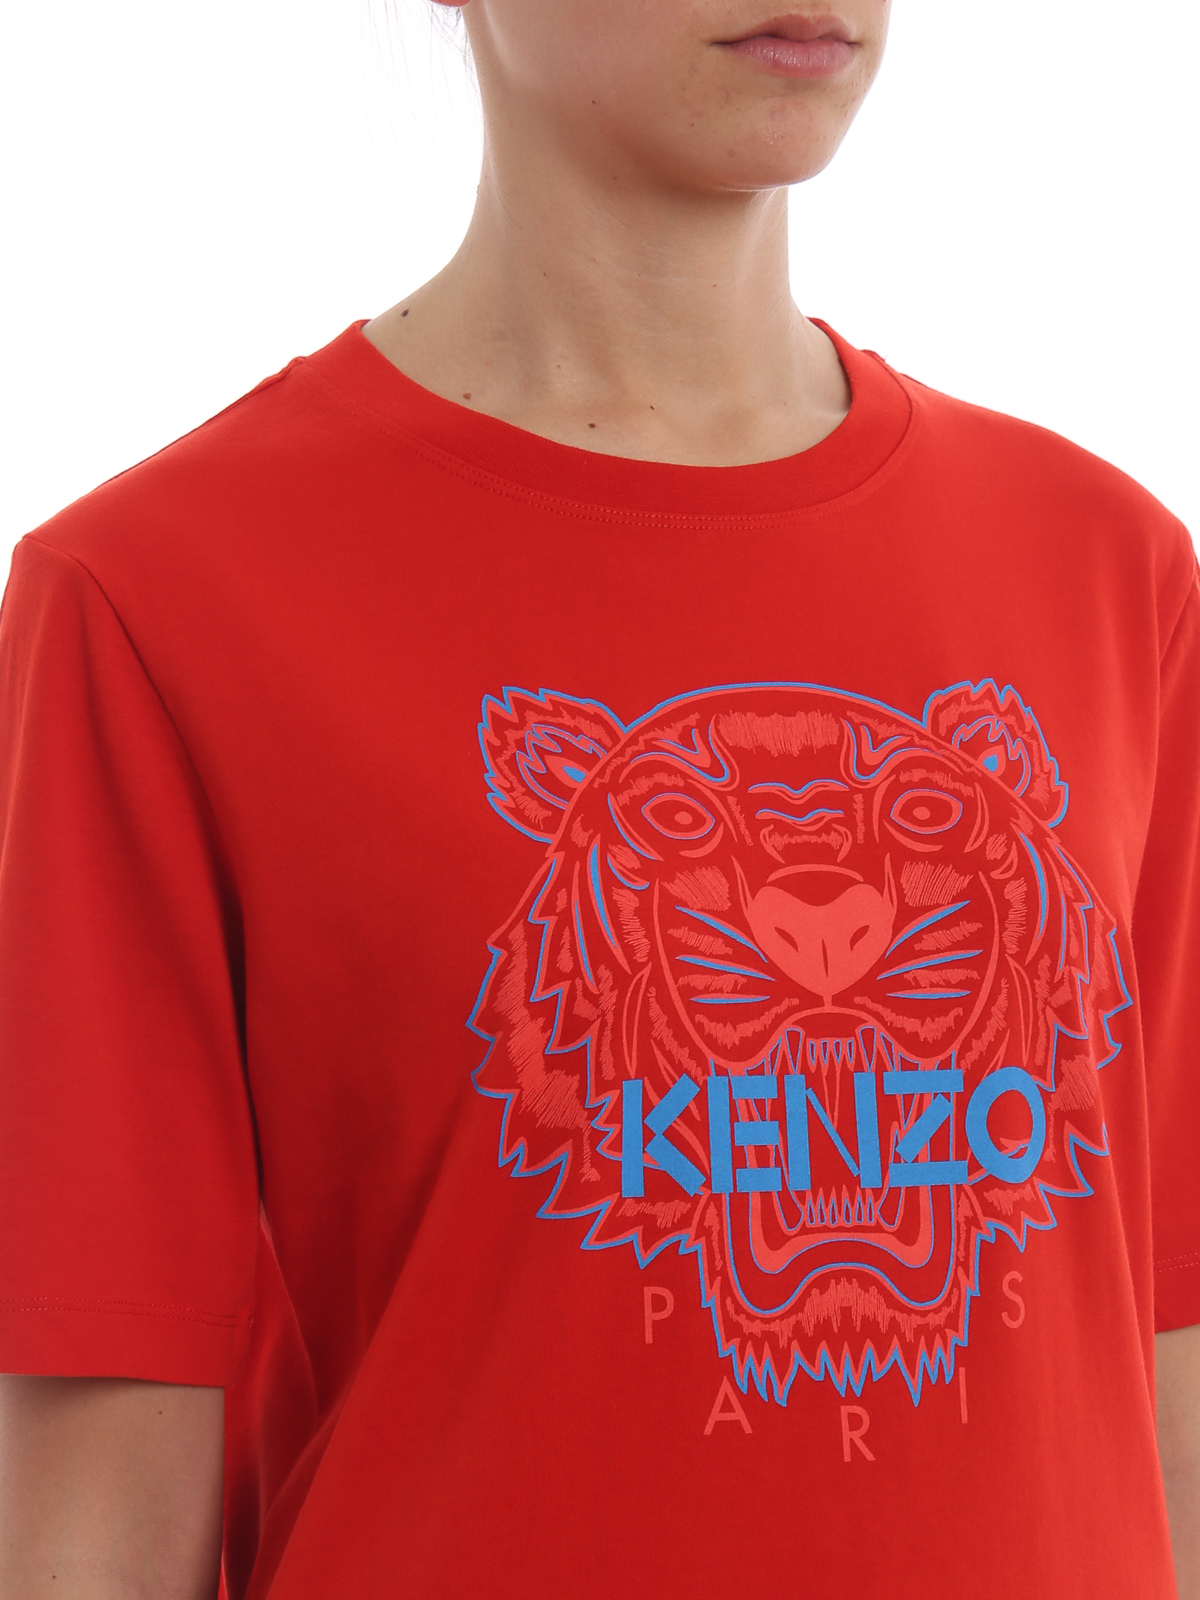 Kenzo - Tシャツ - 赤 - Tシャツ 